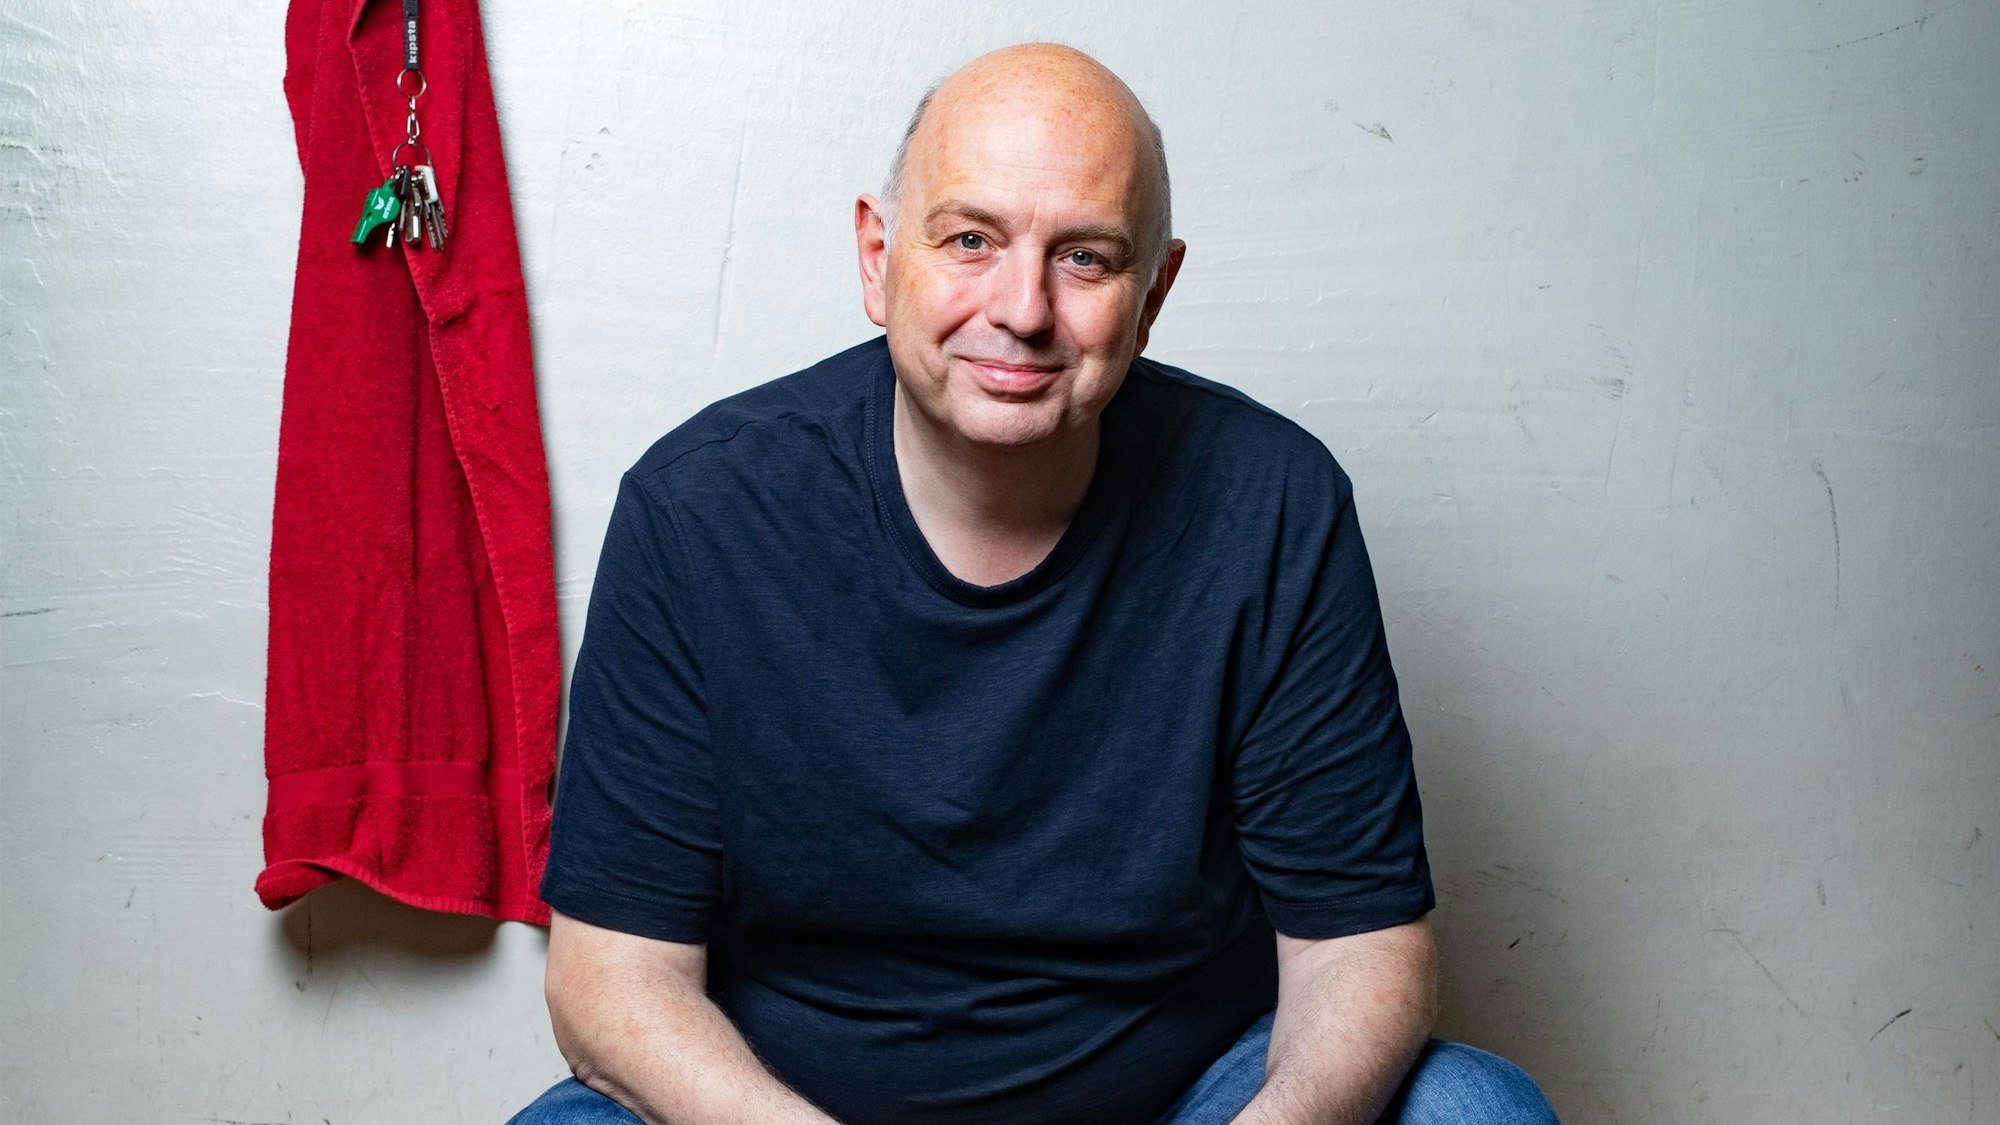 Frank Goosen sitzt auf einer Bank, in einem blauen T-Shirt vor einer weißen Wand. Links von ihm hängt ein rotes Handtuch und ein Schlüsselbund mit Trillerpfeife.